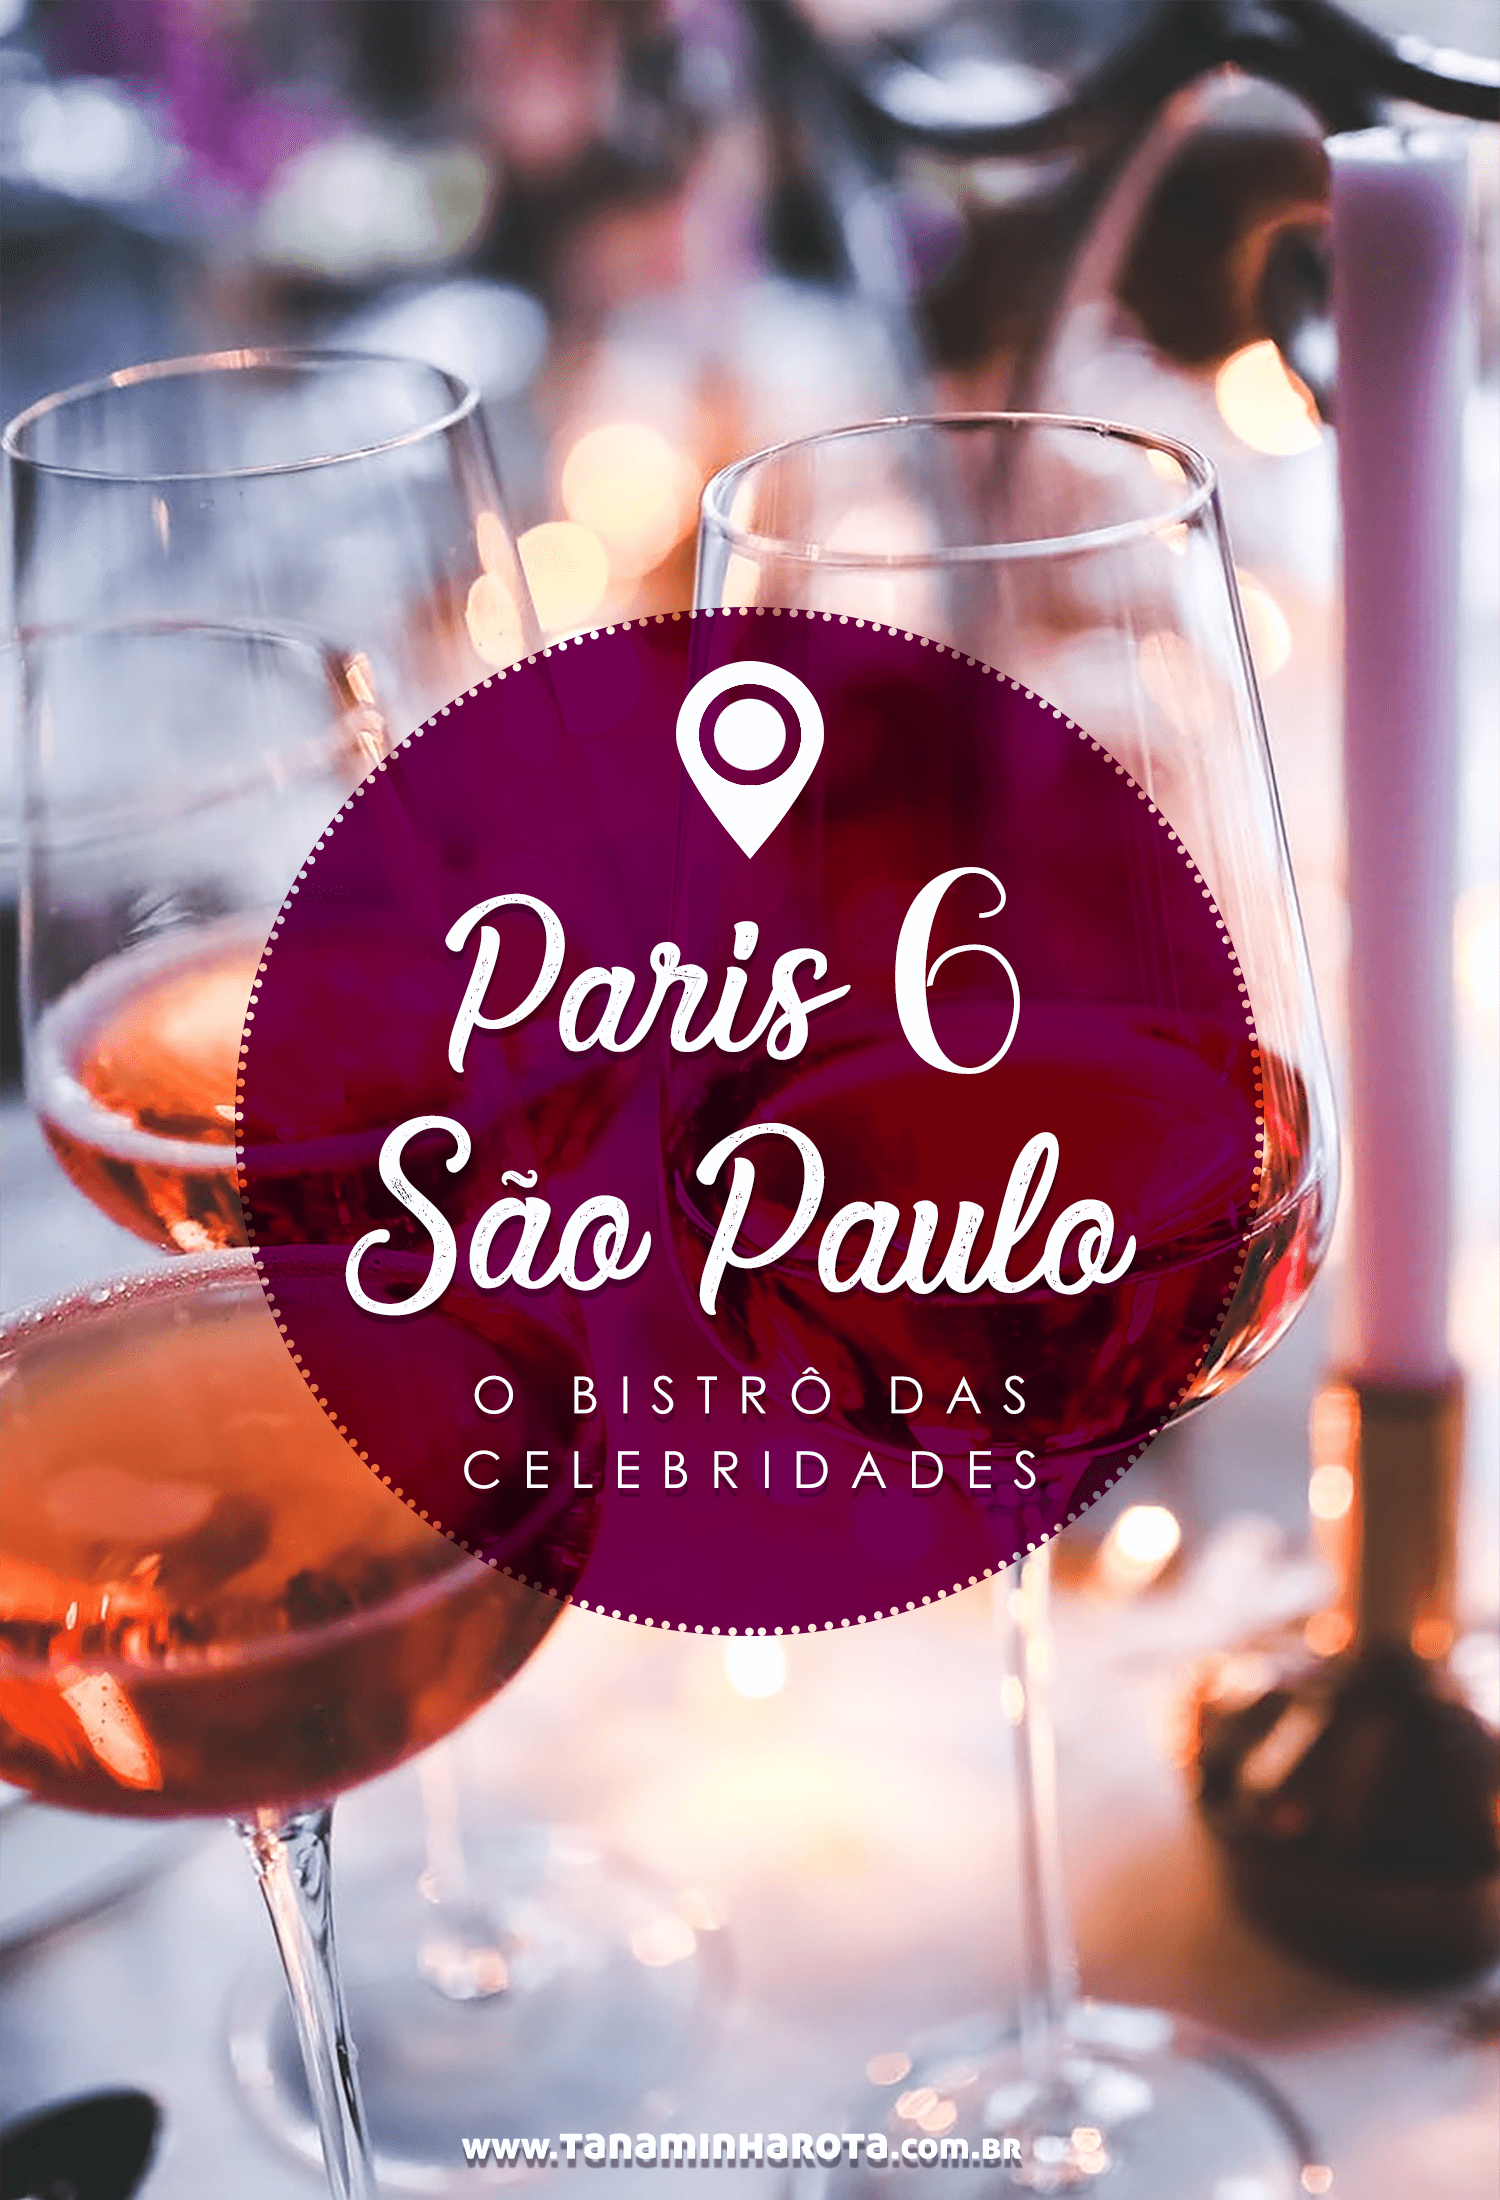 Procurando um lugar charmoso para comer em São Paulo? Então conheça o Paris 6, badalado bistrô francês da cidade! #saopaulo #gastronomia #viagem #brasil